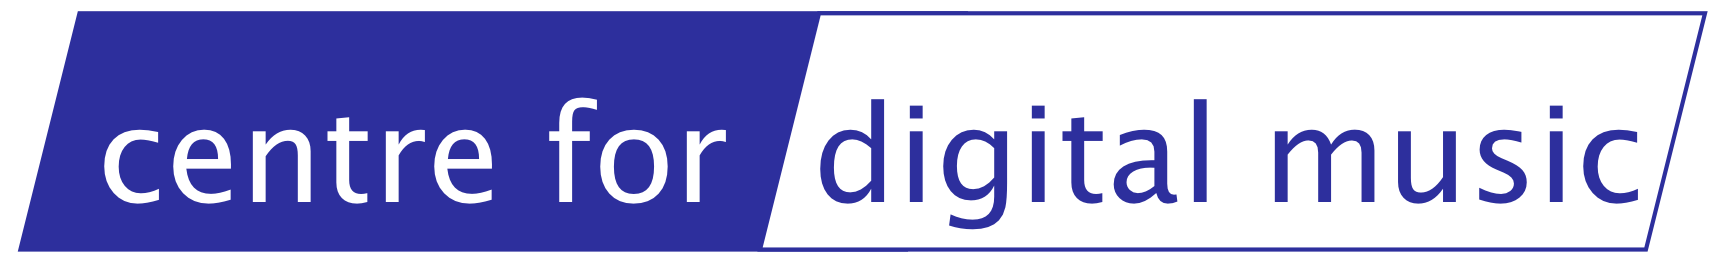 C4DM logo